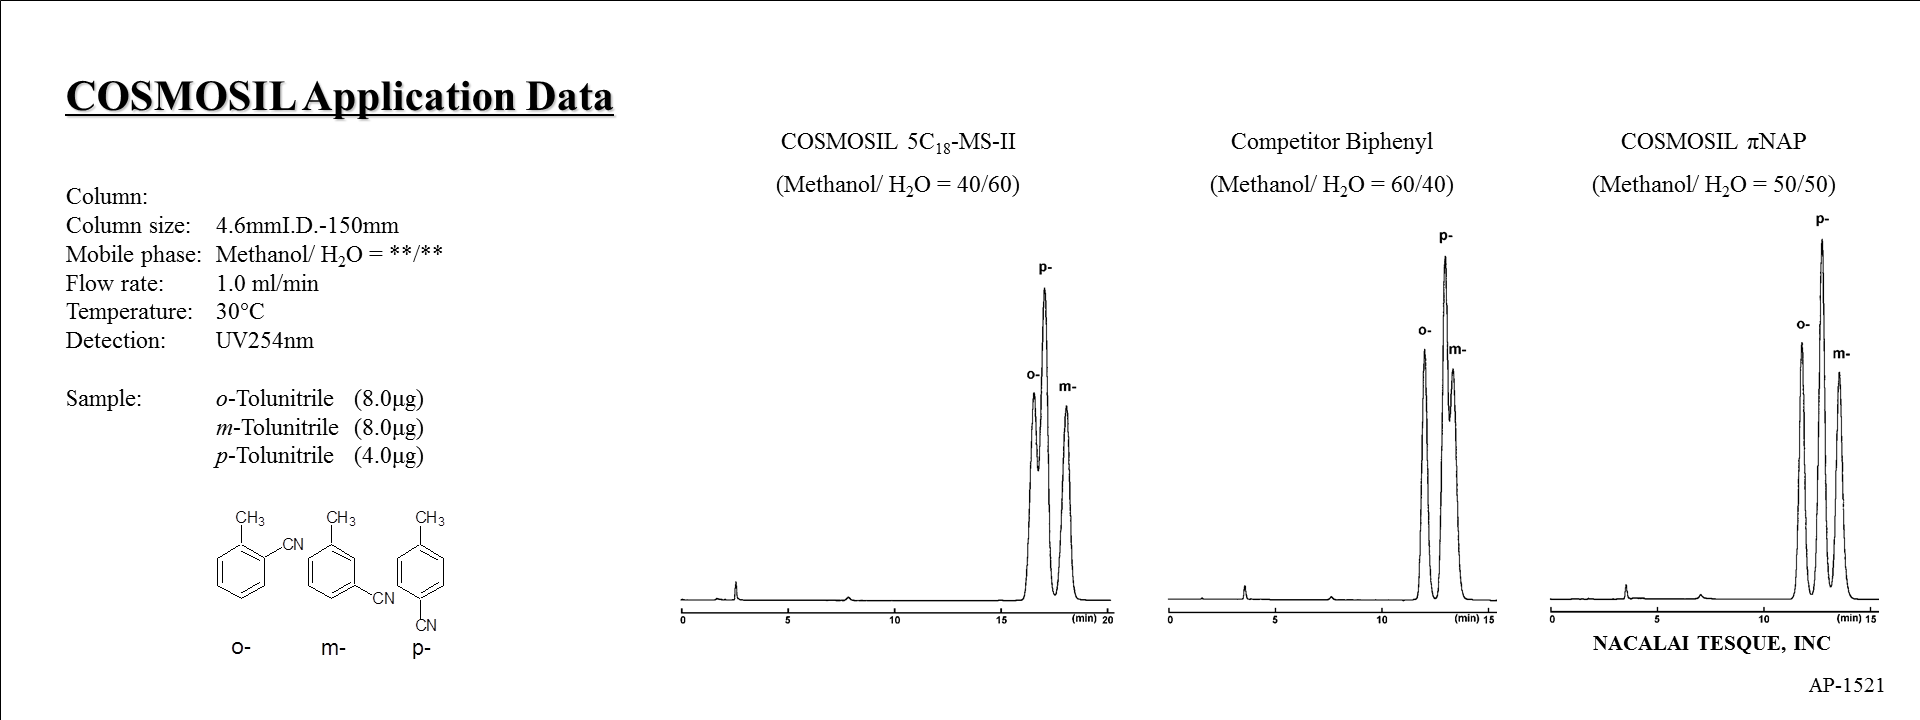 chromatogram of tolunitrile isomers